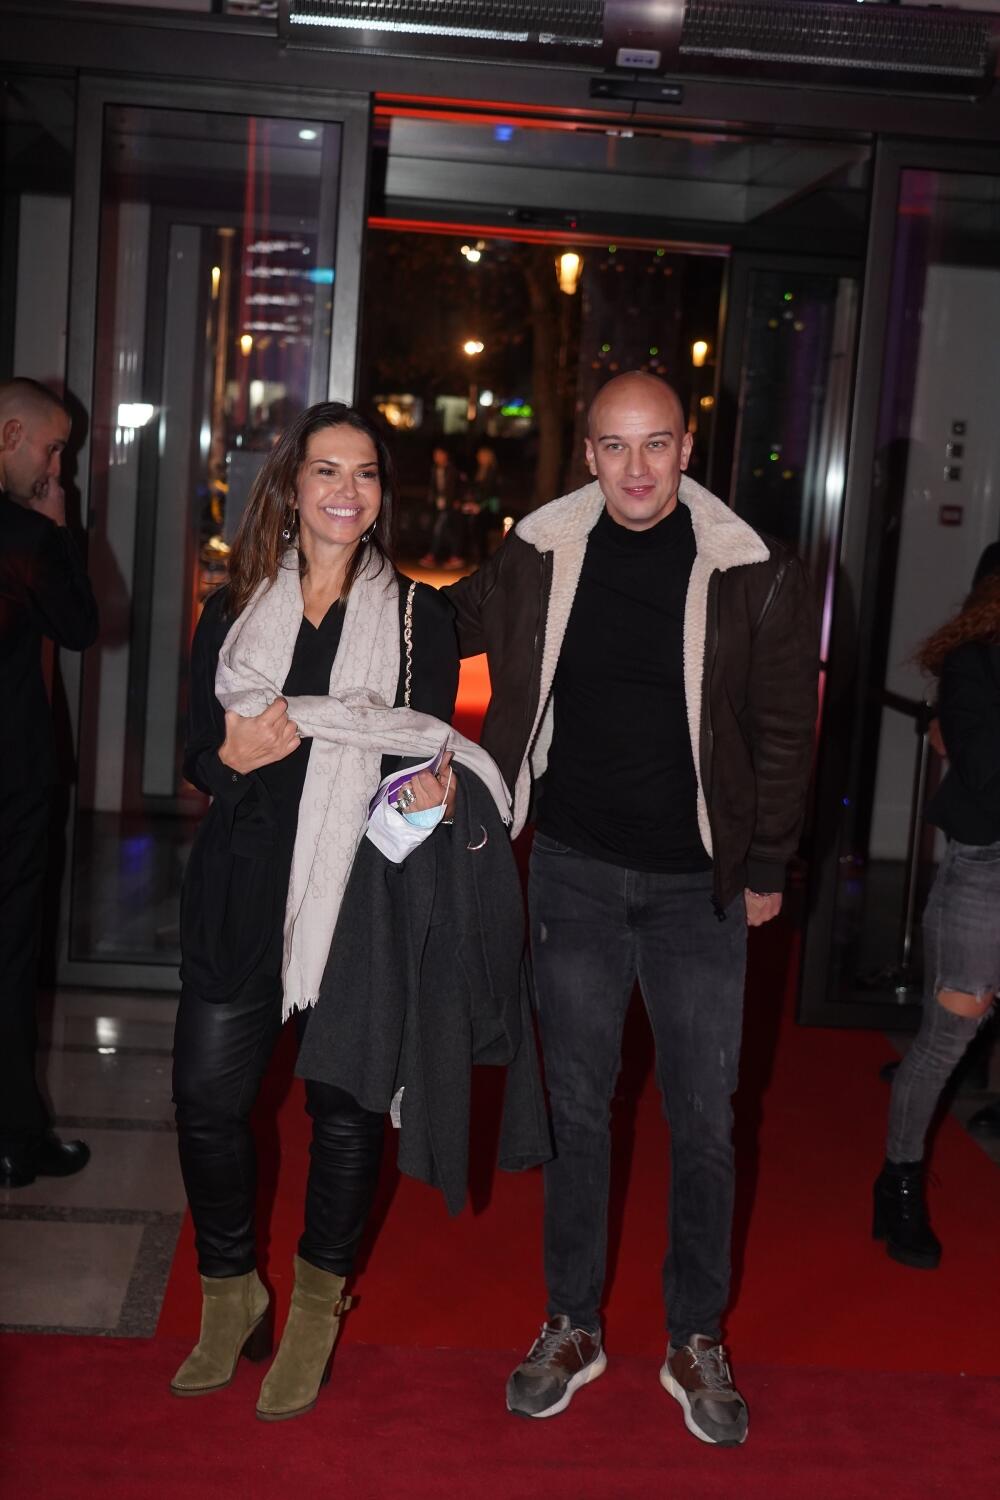 <p>Jedna od omiljenih srpskih glumica viđena je na beogradskoj premijeri filma "Juni vetar 2", a gde je Nataša Ninković ― tu je i pažnja svih prisutnih!</p>